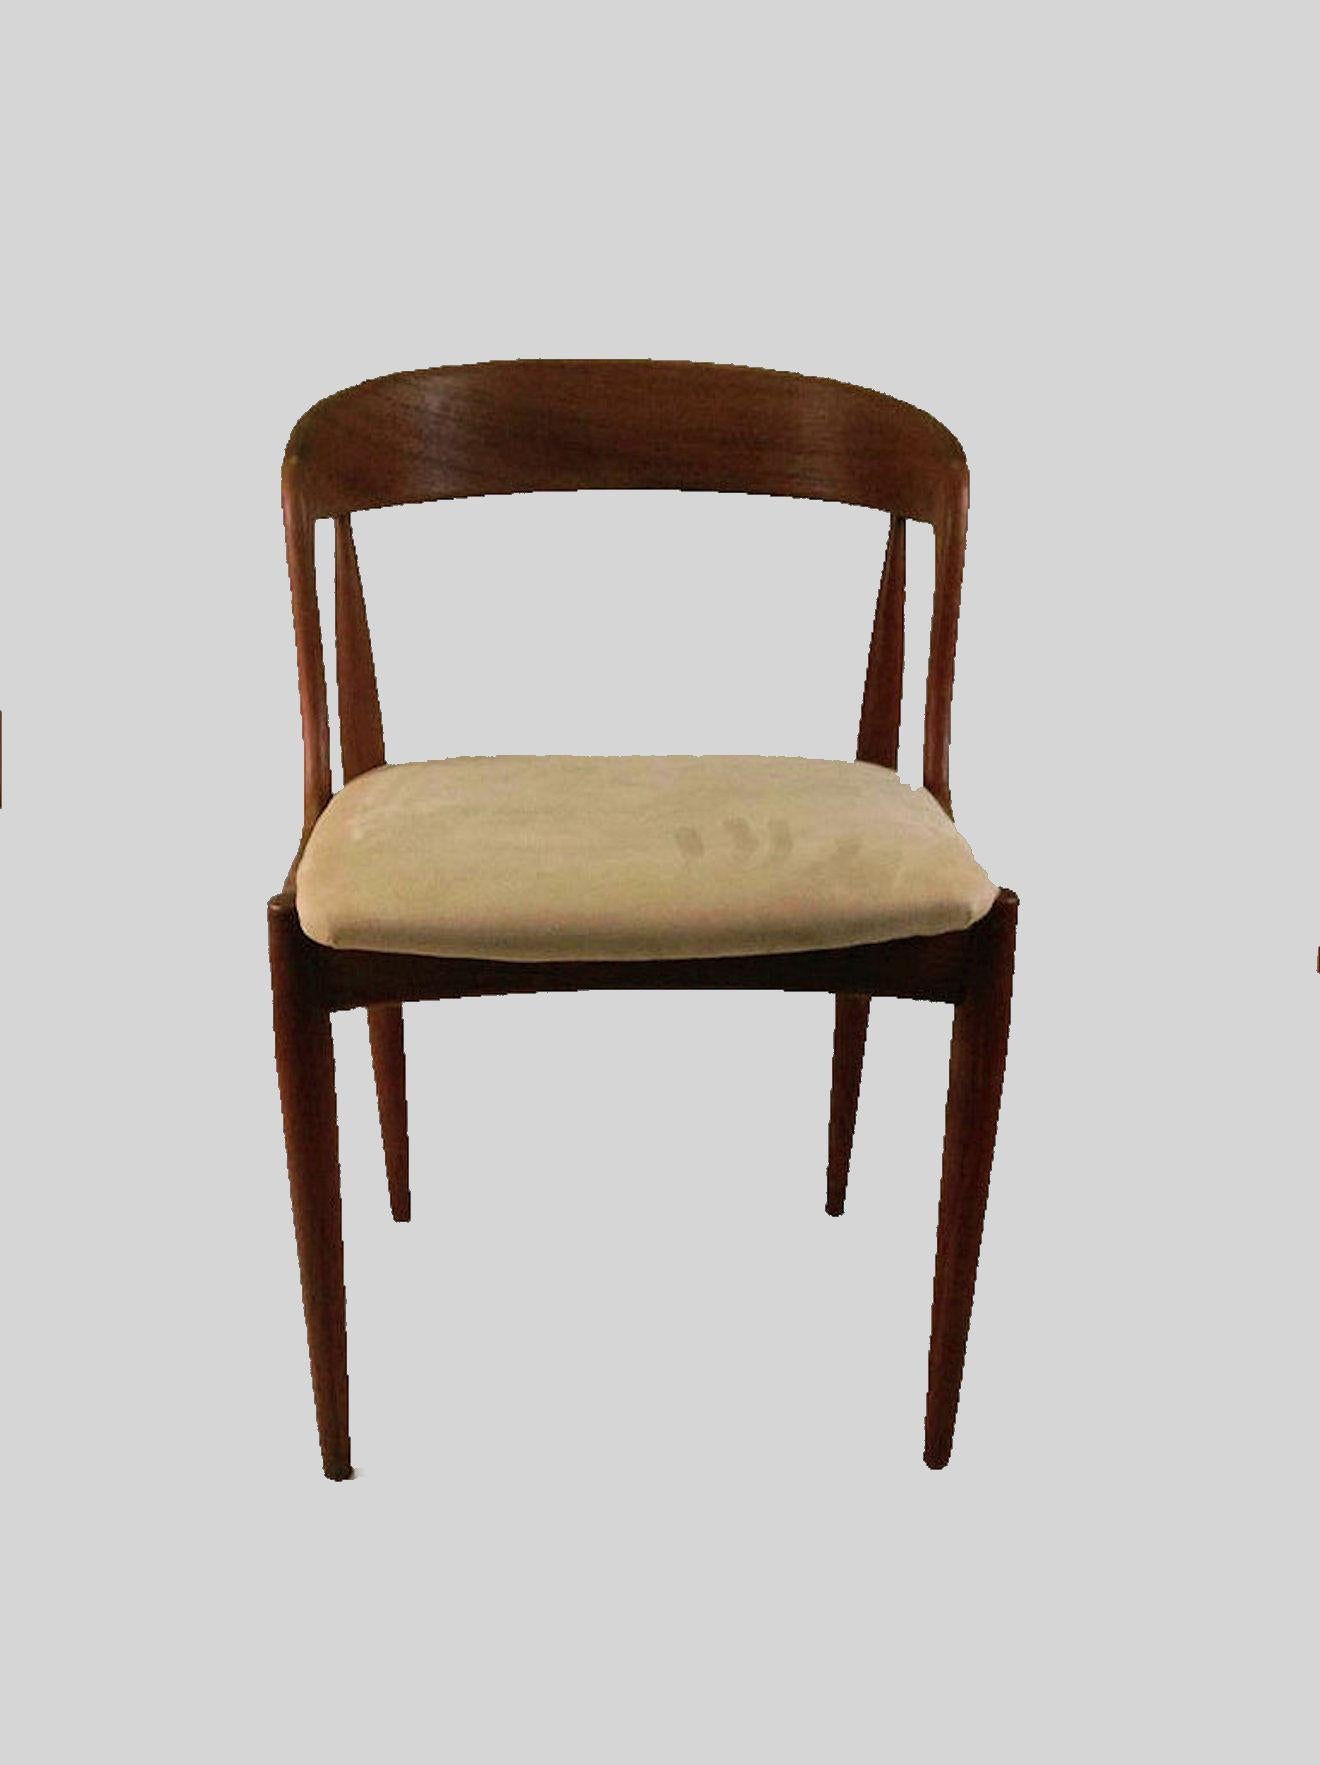 Satz von sechs restaurierten Johannes Andersen Esszimmerstühlen aus Teakholz, entworfen für Ørum Møbelfabrik im Jahr 1965

Die Stühle wurden 1965 von dem dänischen Designer Johannes Andersen für die Uldum Møbelfabrik entworfen und bestehen aus sechs